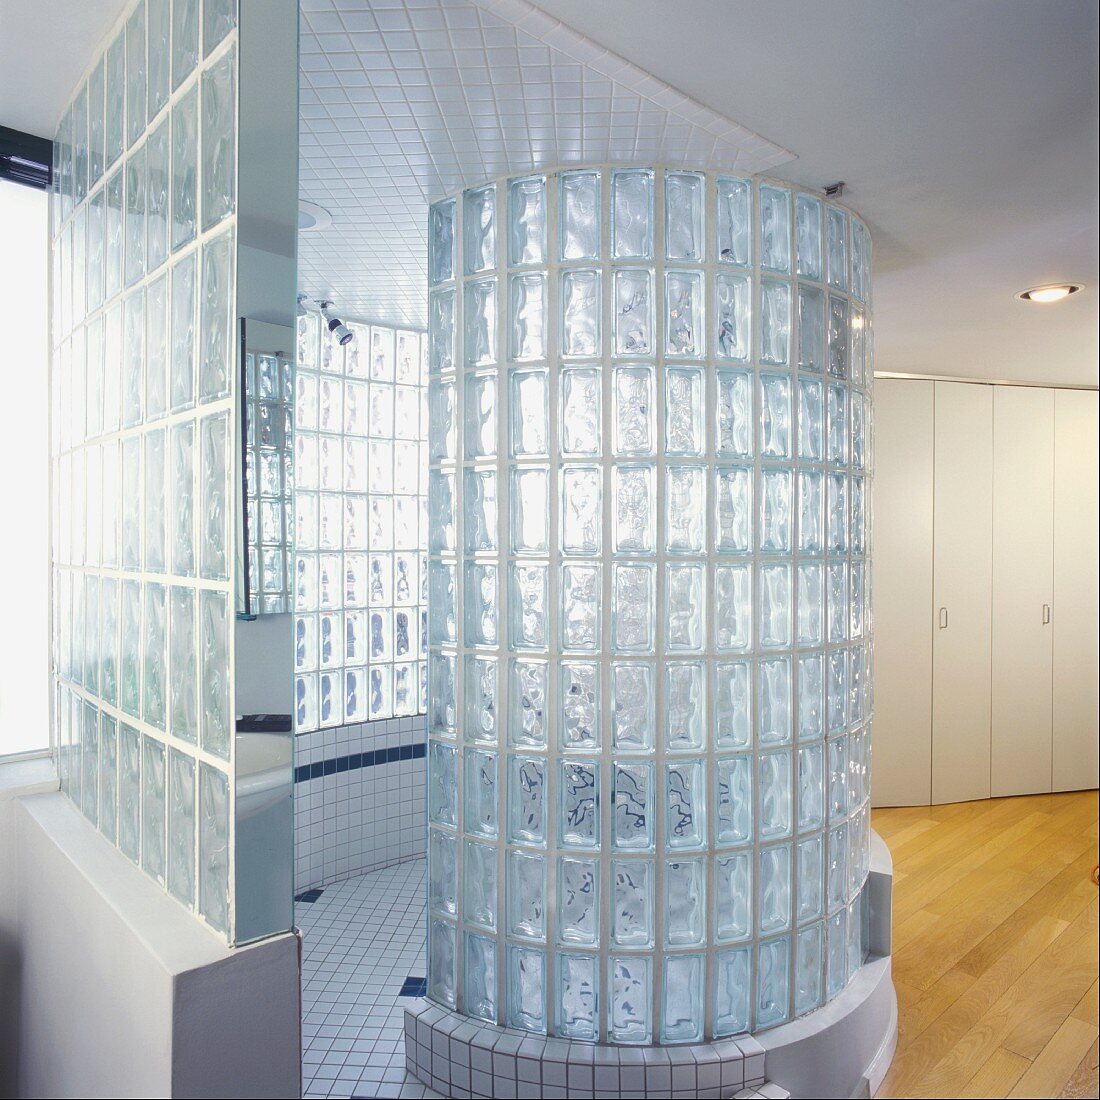 Zylinder aus Glasbausteinen in modernem Bad